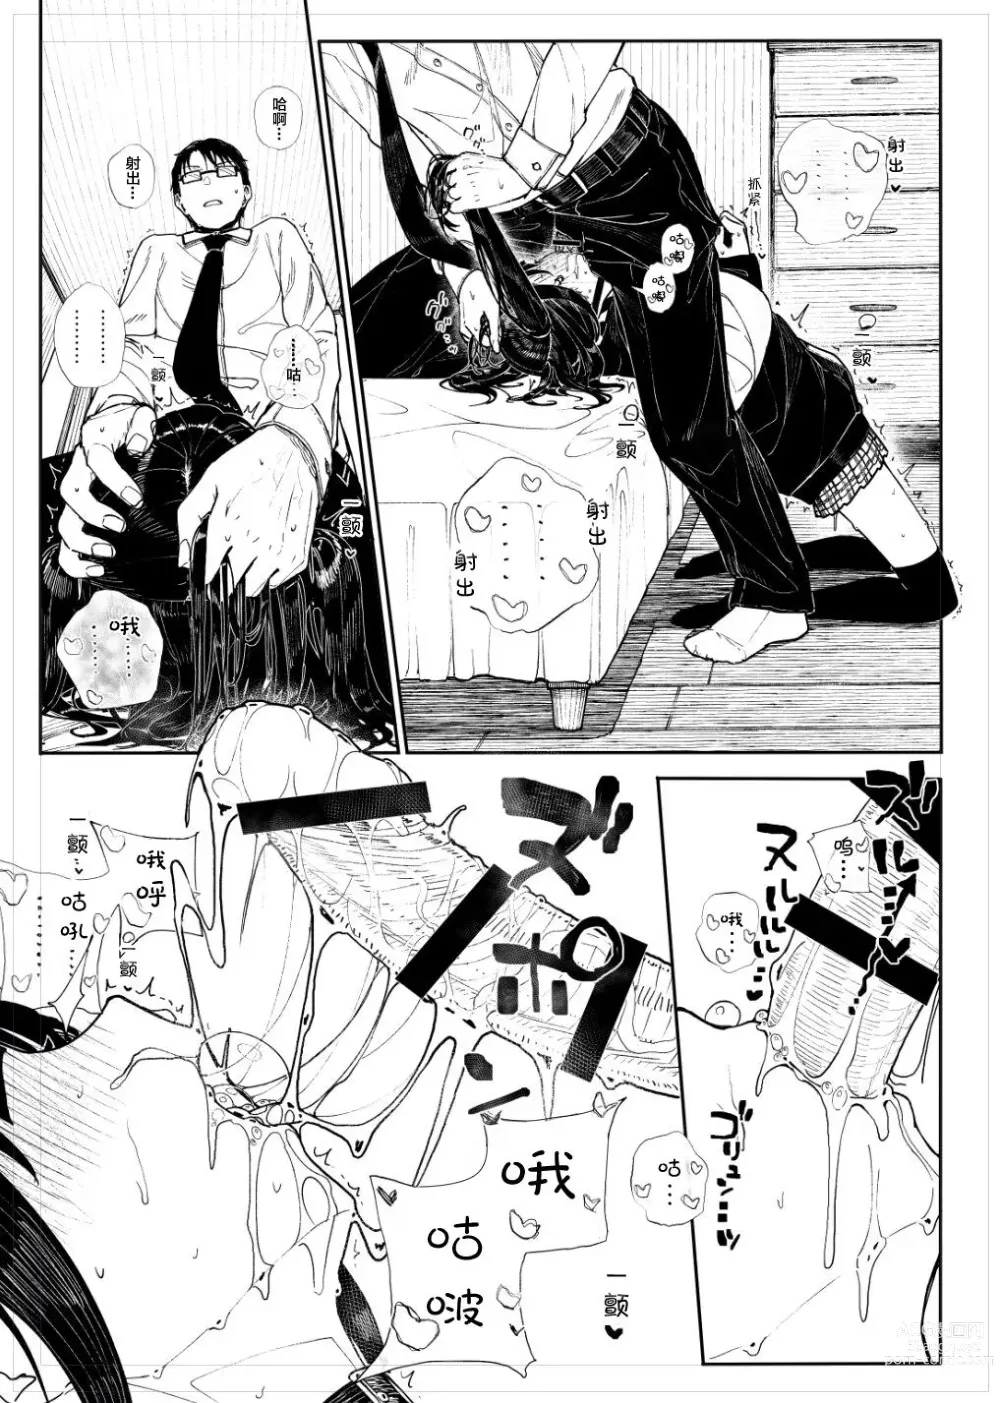 Page 9 of doujinshi Kubishime Jiraikei Shoujo Manga